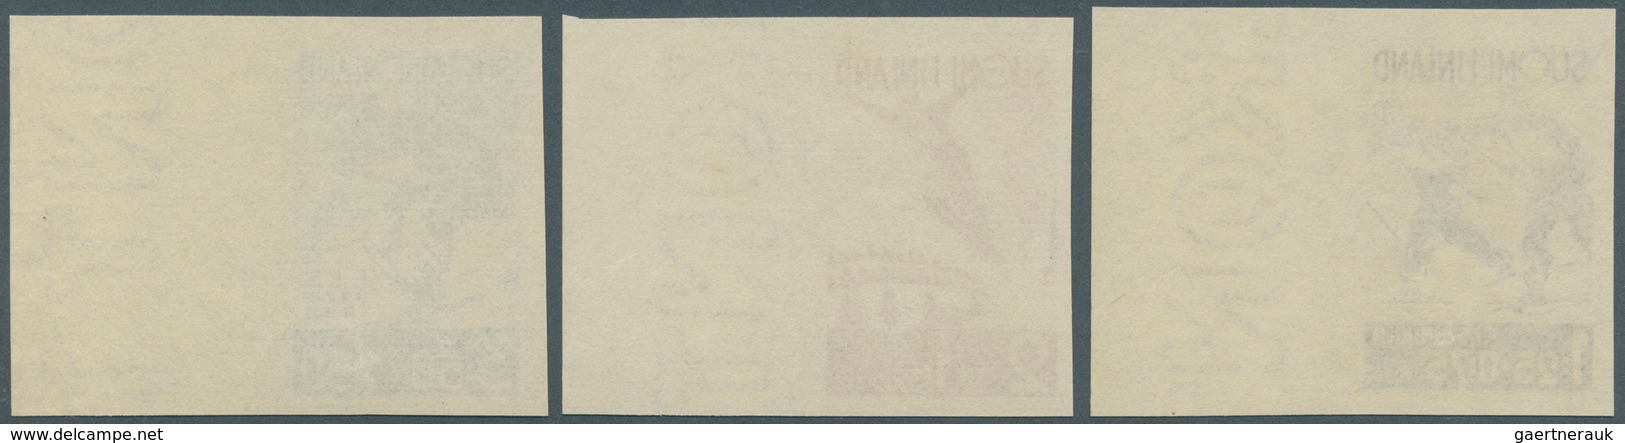 Finnland: 1938, Finnland, Internationale Ski-Wettkämpfe In Lahti Kompletter Satz UNGEZÄHNT Vom Recht - Used Stamps